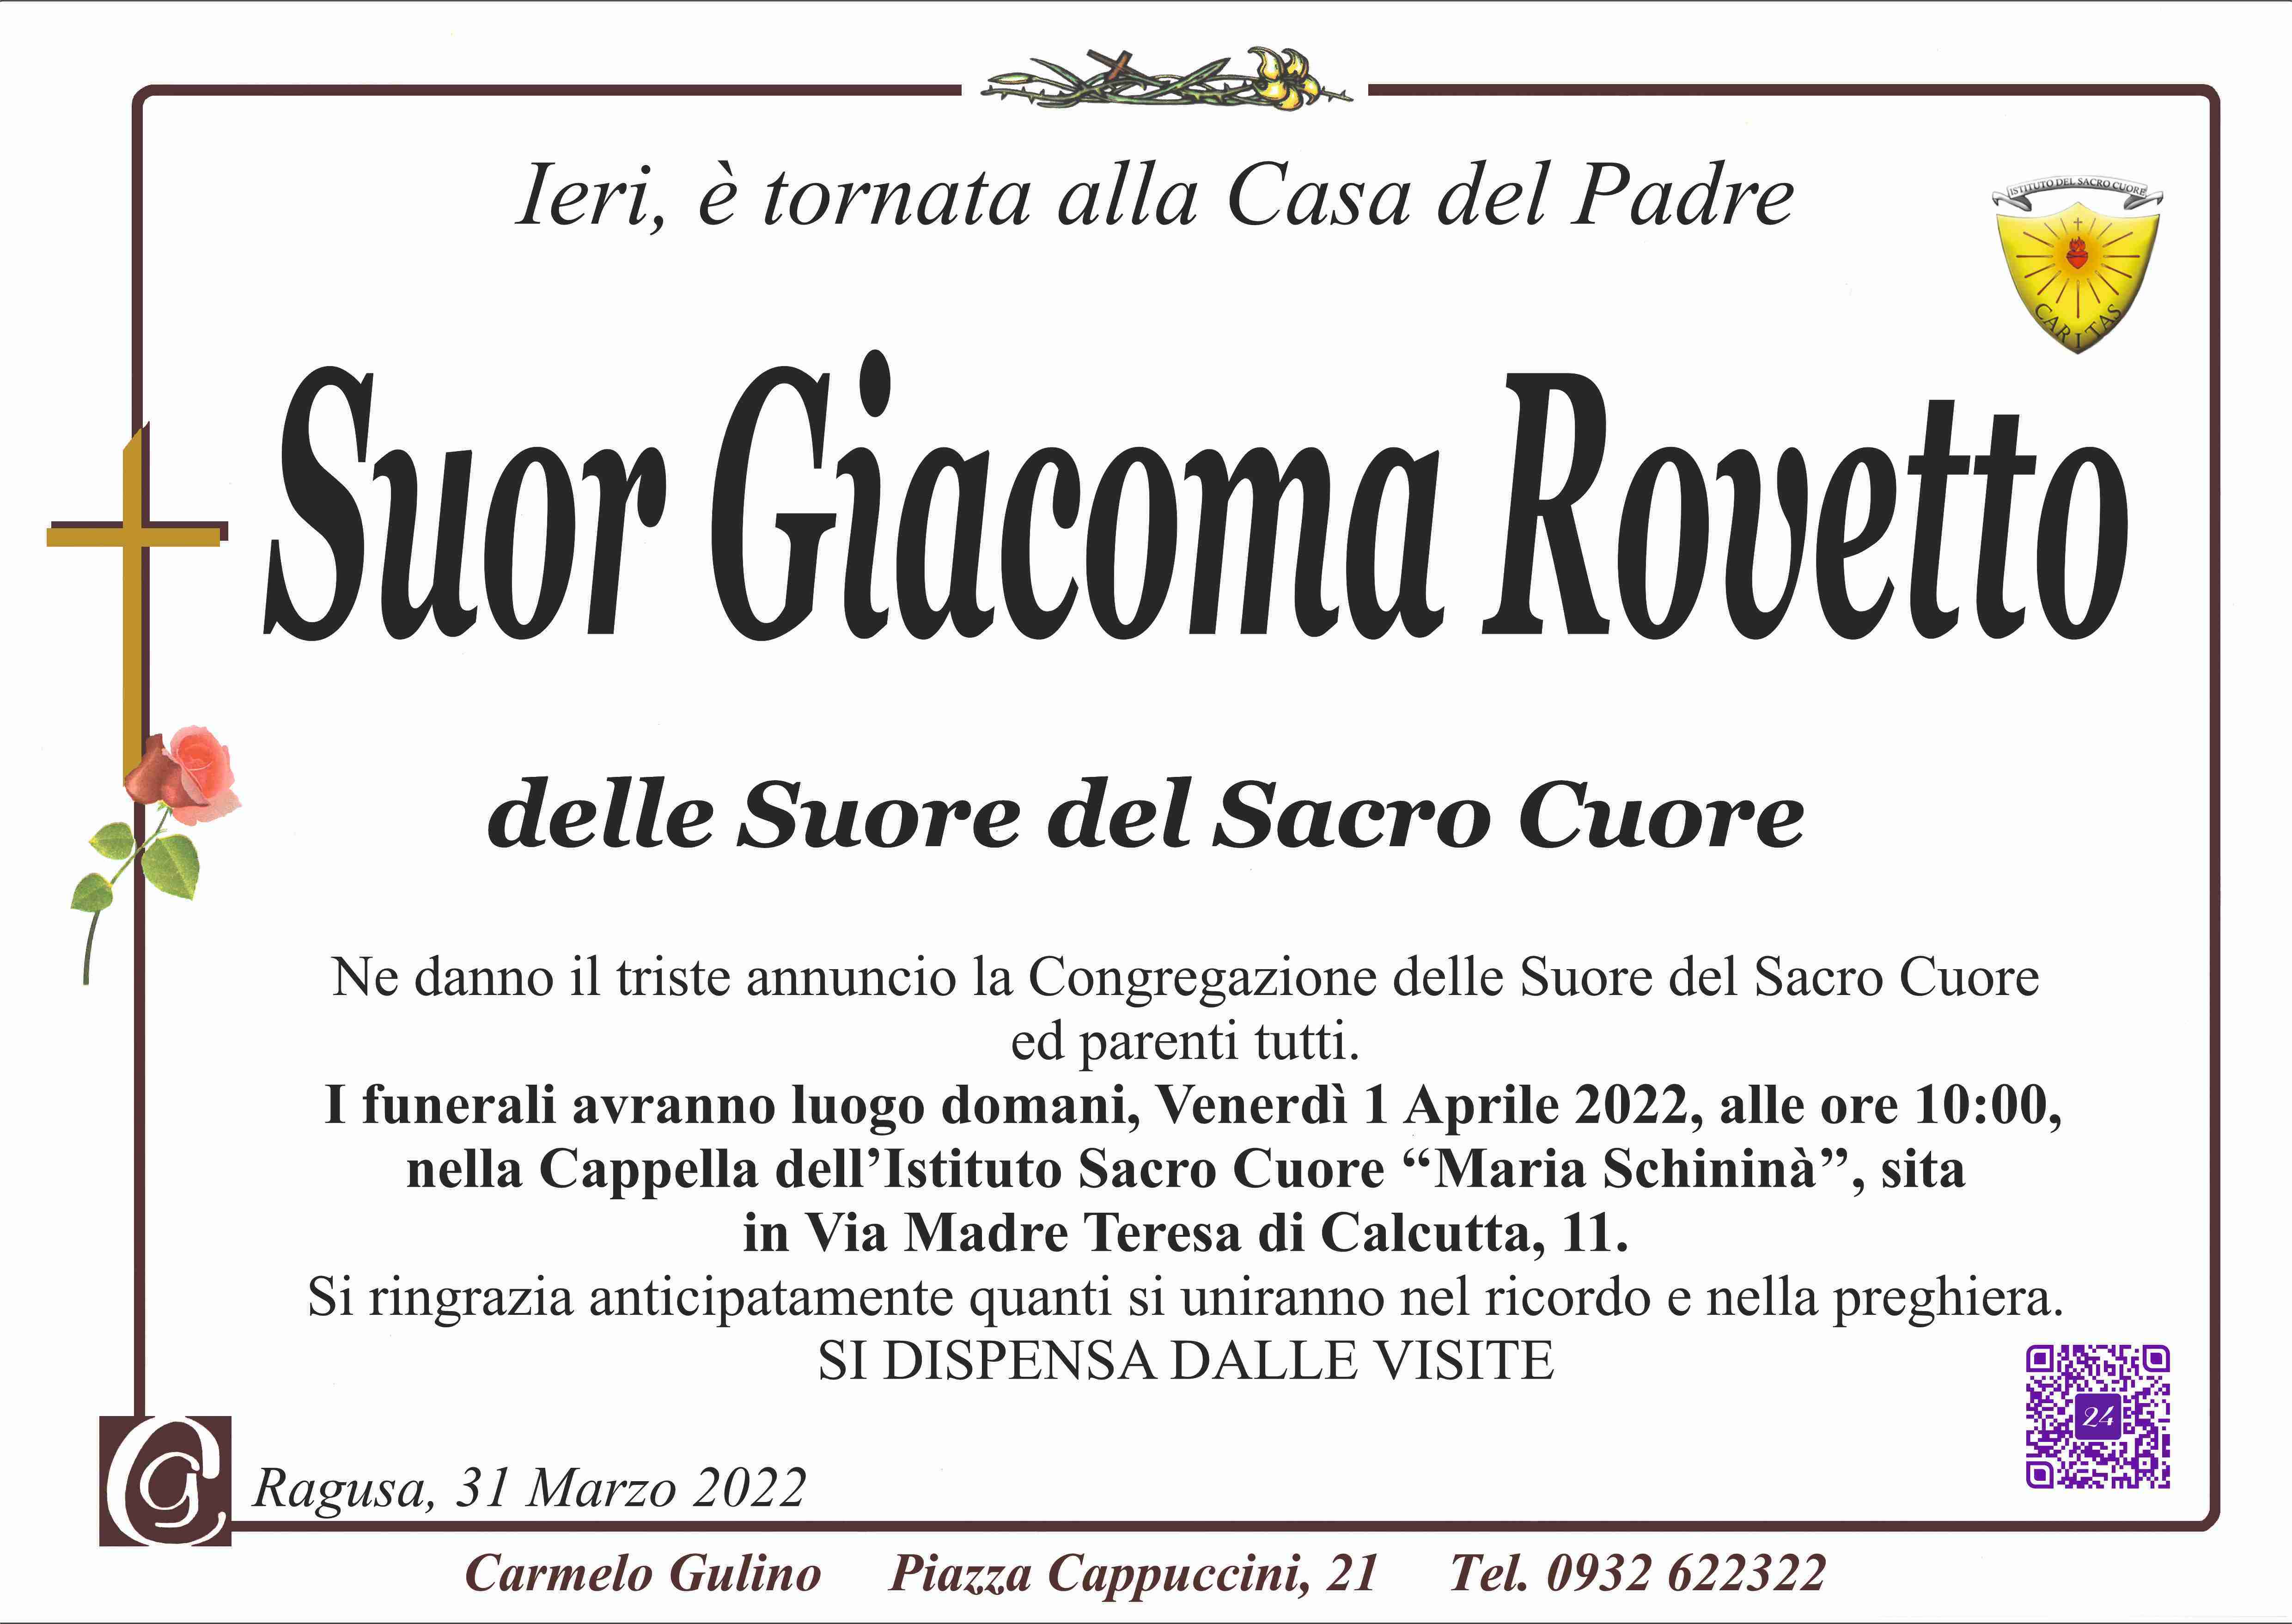 Giacoma Giuseppa Rovetto